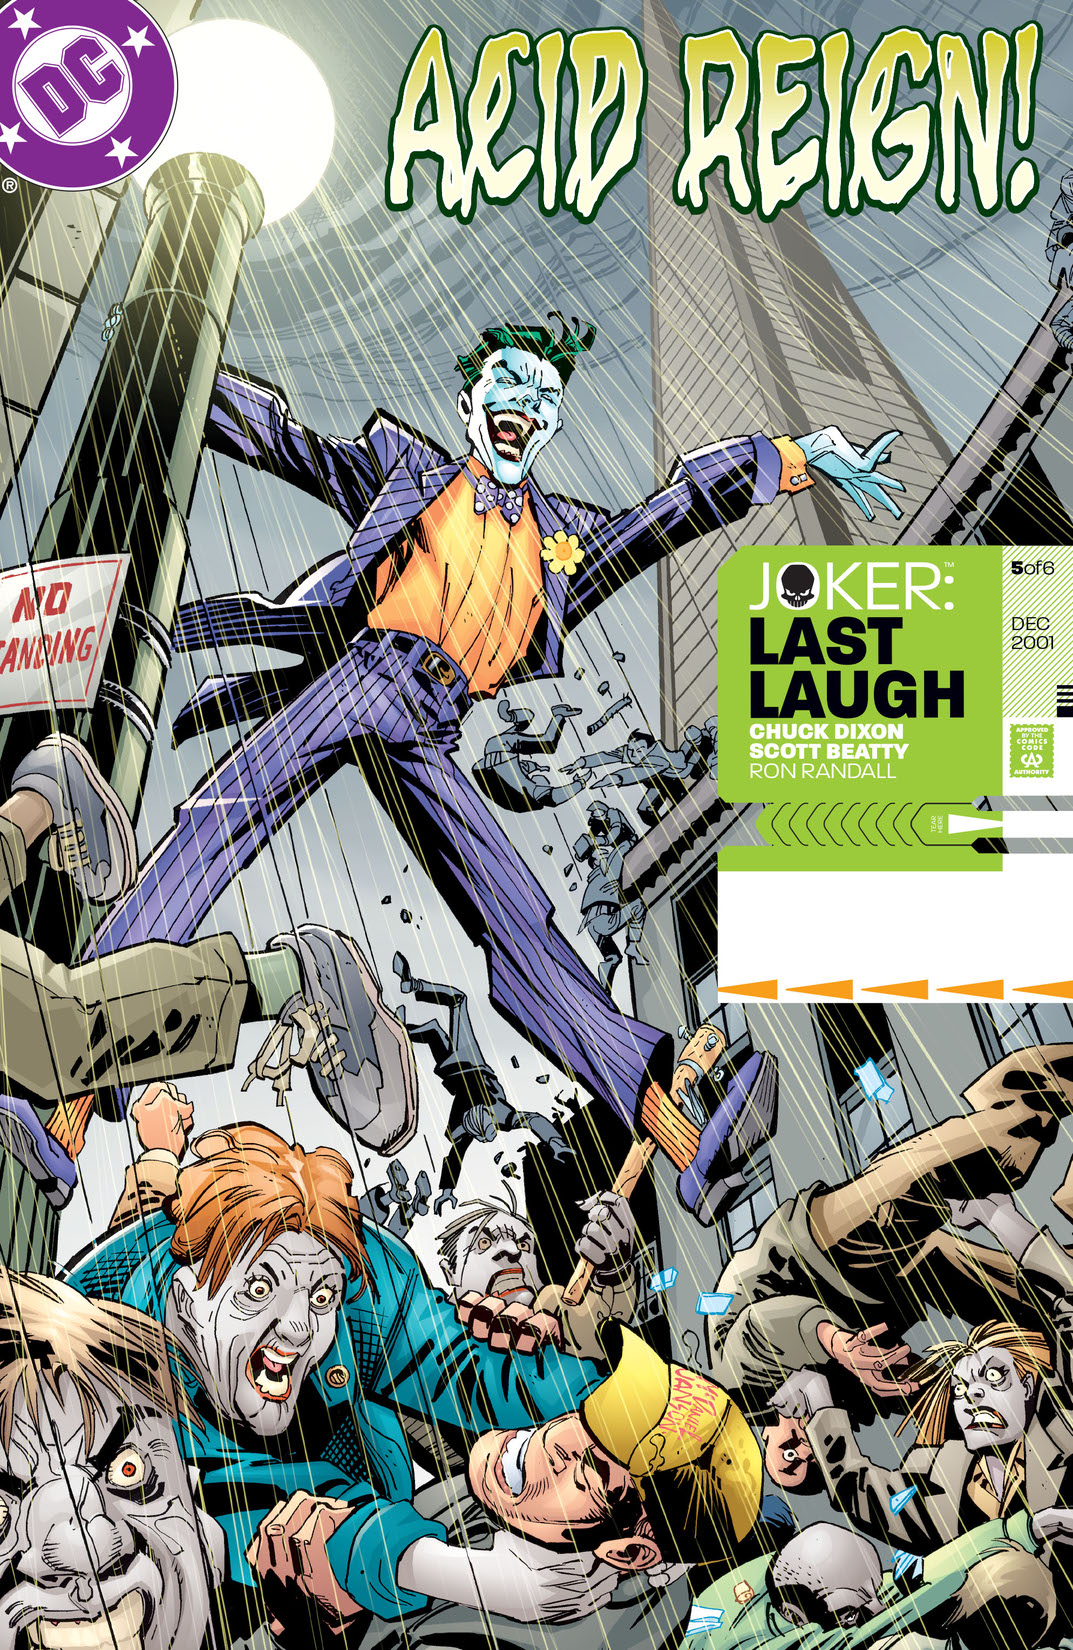 Joker: Last Laugh #5 preview images